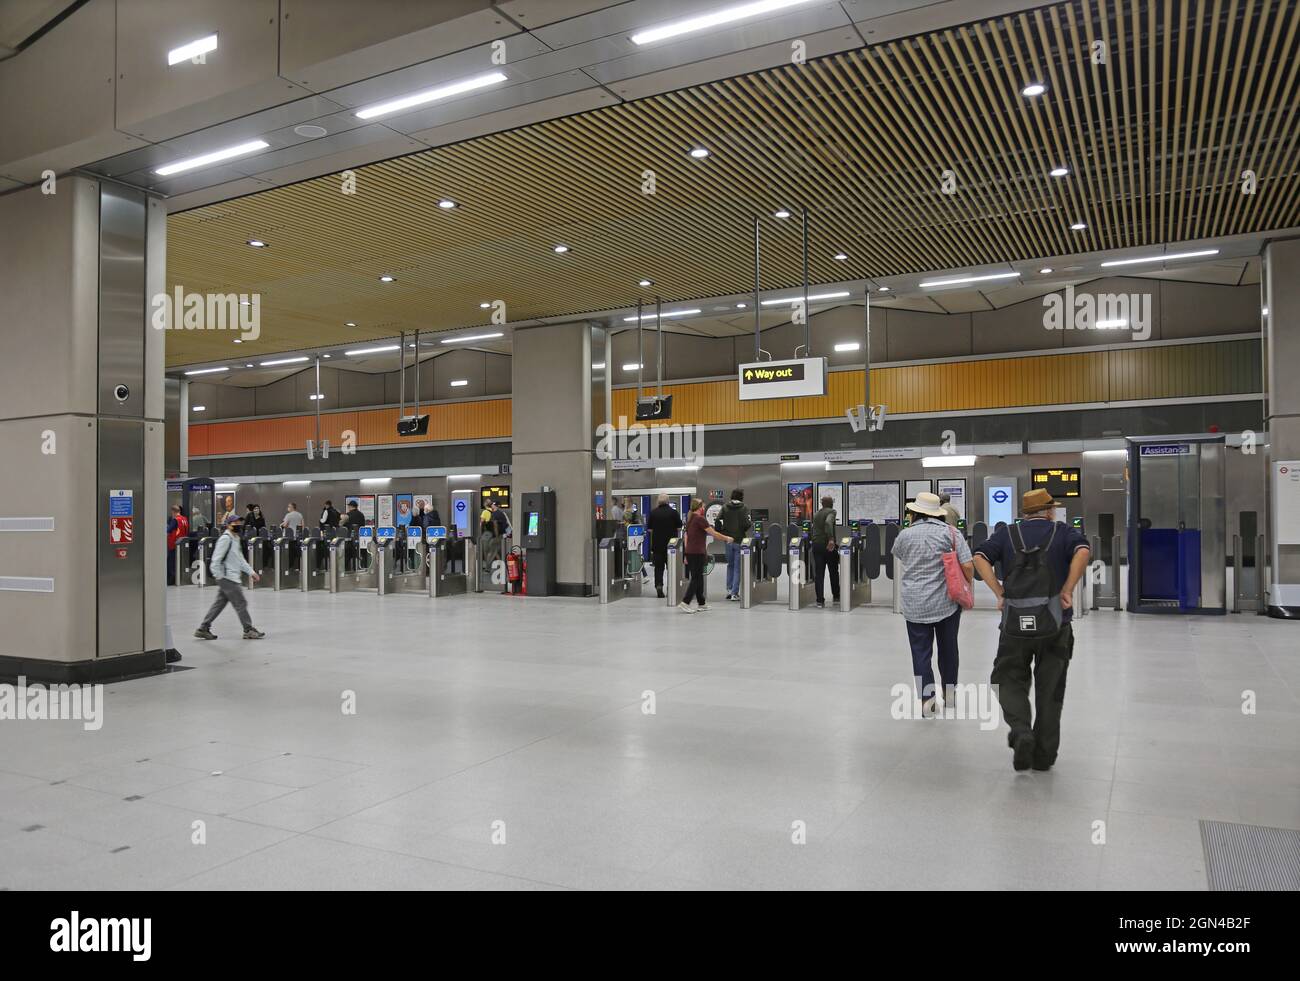 Tickethalle an der neuen Londoner U-Bahn-Station Battersea Power Station, London, Großbritannien. Eröffnet Im September 2021. Teil der neuen Northern Line Extension. Stockfoto